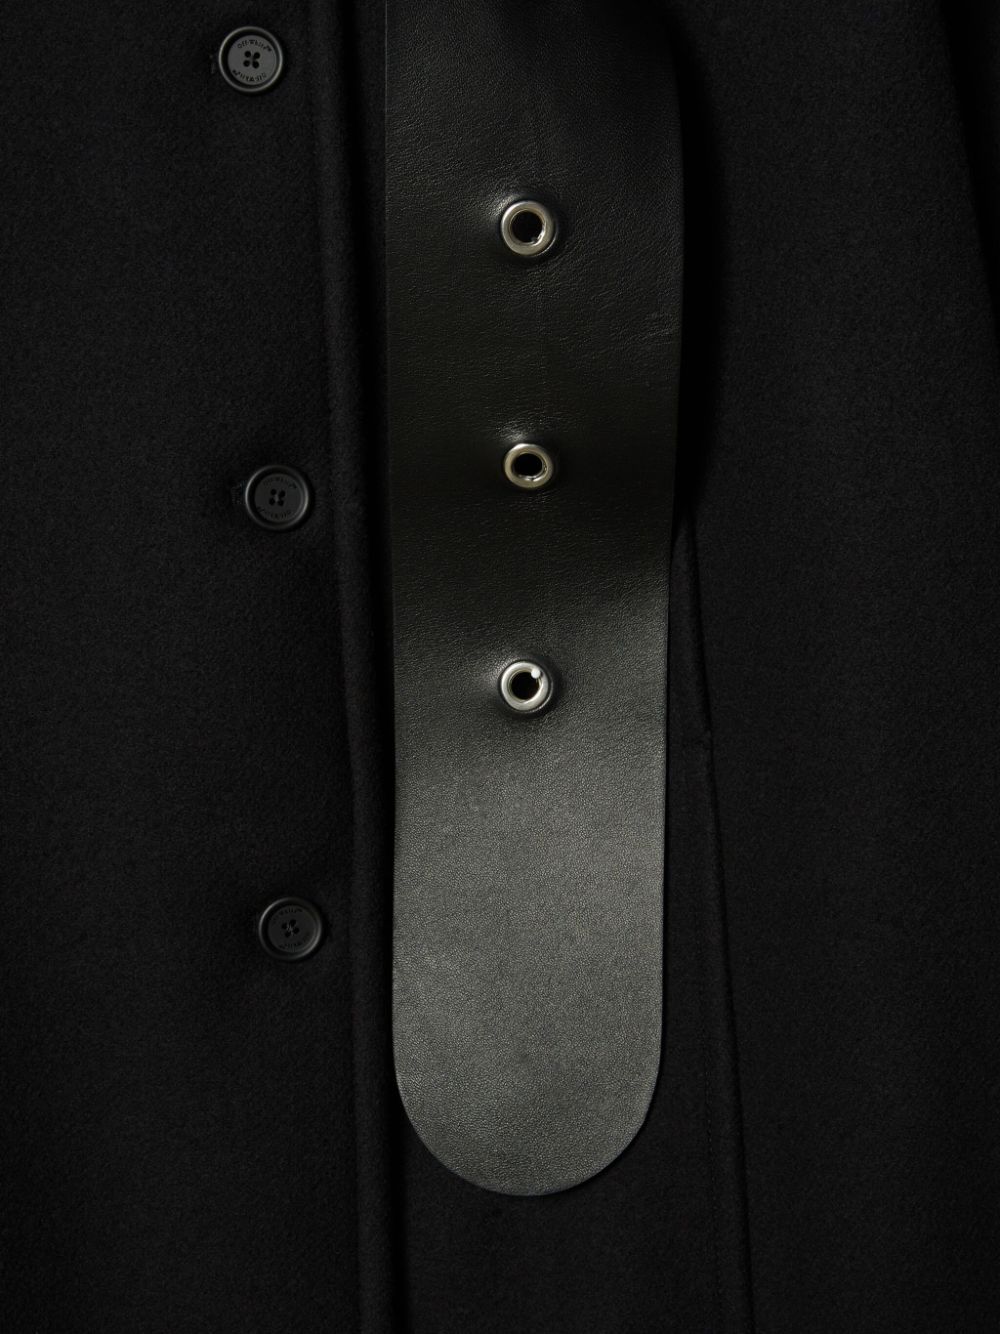 Áo khoác đen thắt lưng cho phụ nữ in sợi len dòng FW23